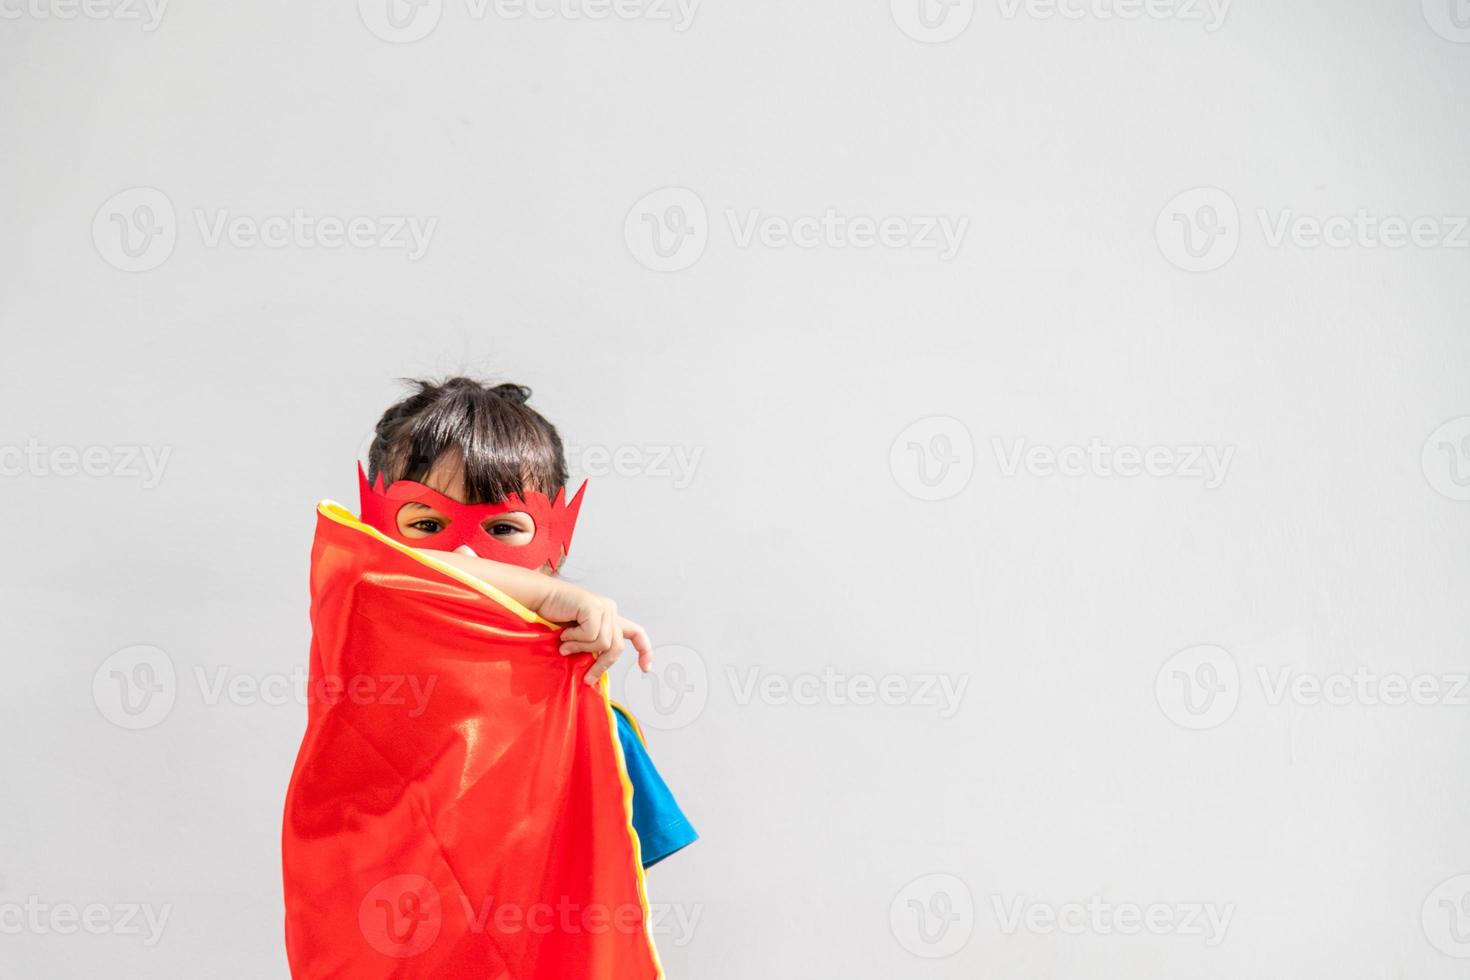 Kinderkonzept, lächelndes Mädchen, das Superheld auf weißem Hintergrund spielt foto